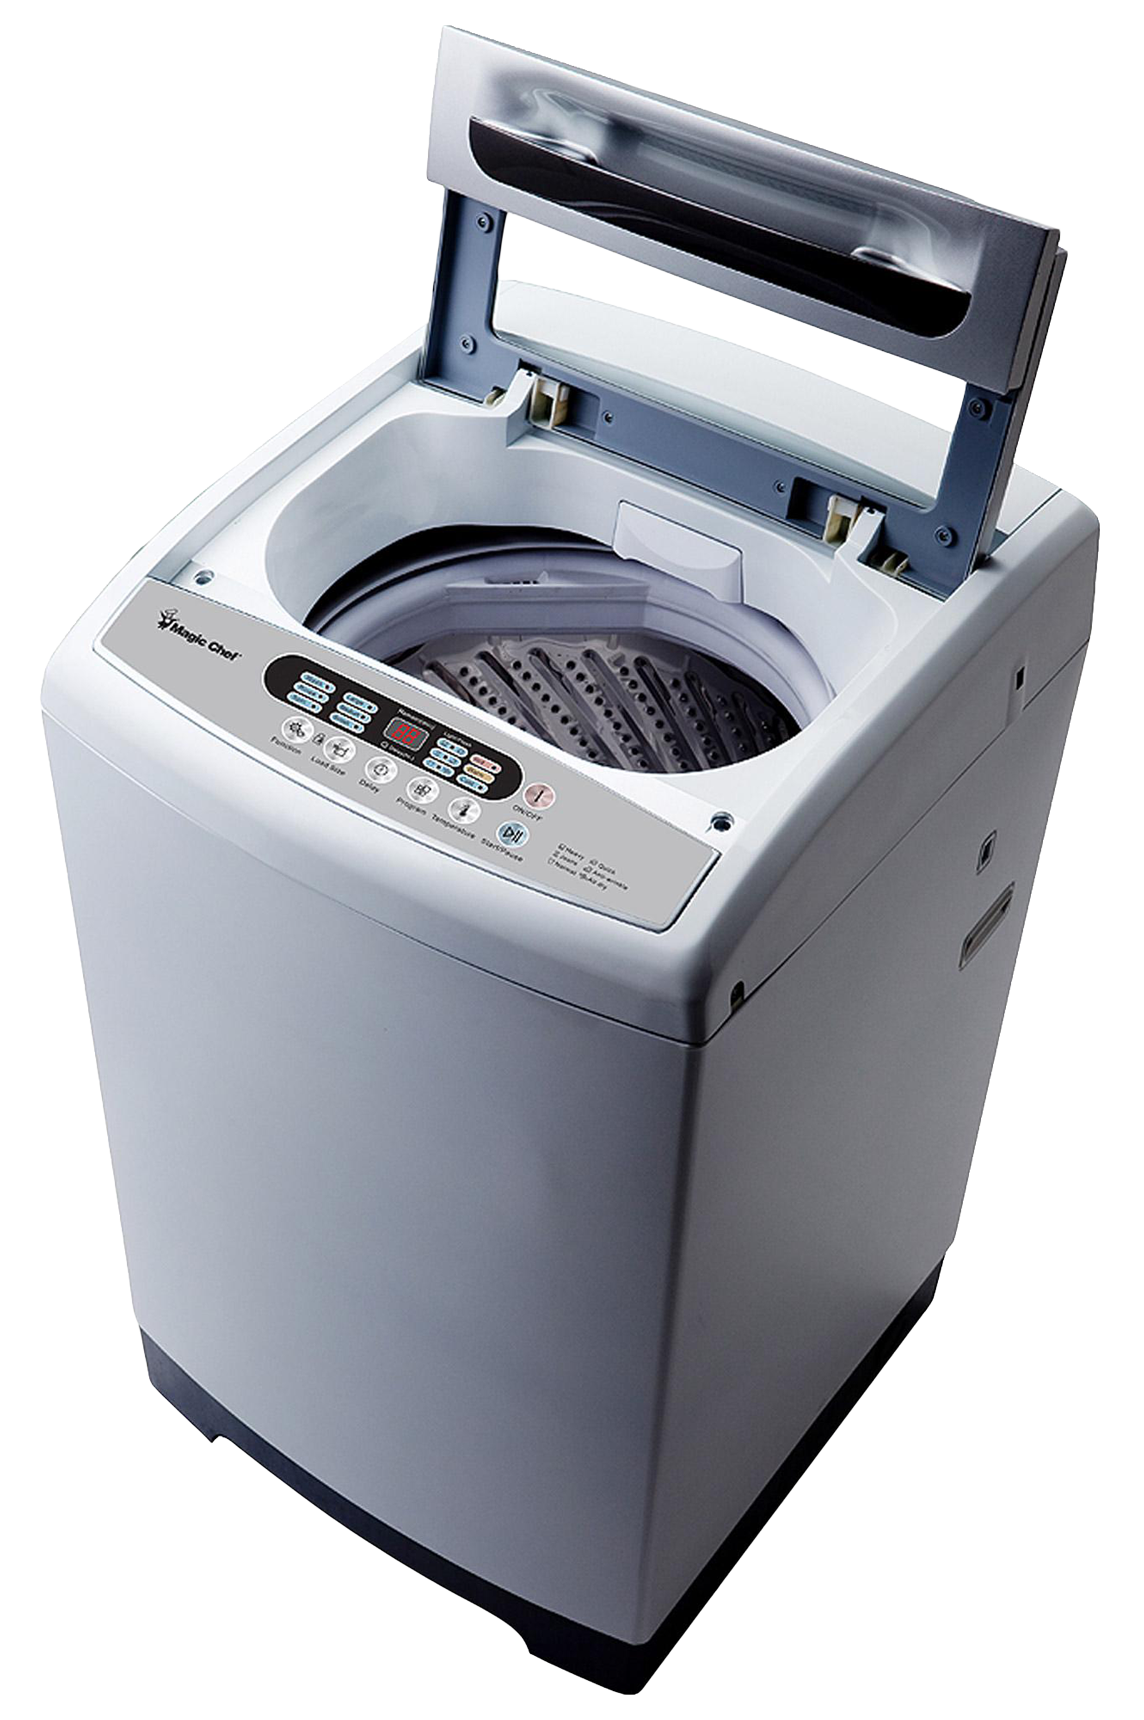 Washing Machine Png Image Purepng Free Transparent Cc Png Image The